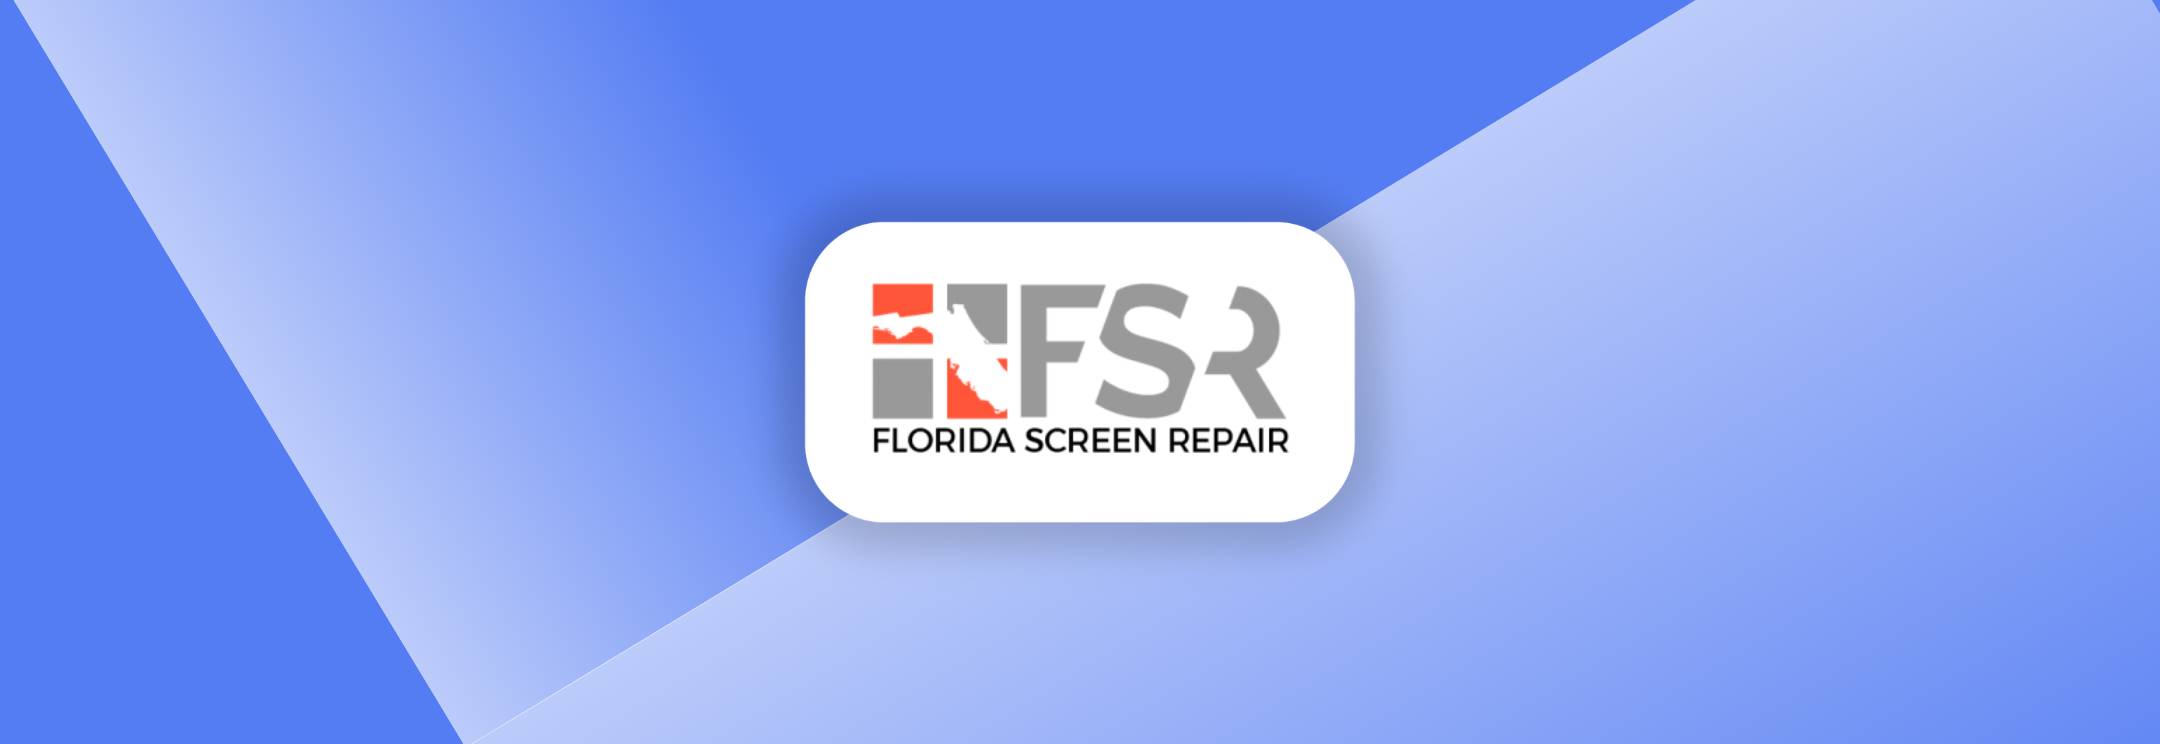 Client Florida Screen Repair Marketing Ingenious